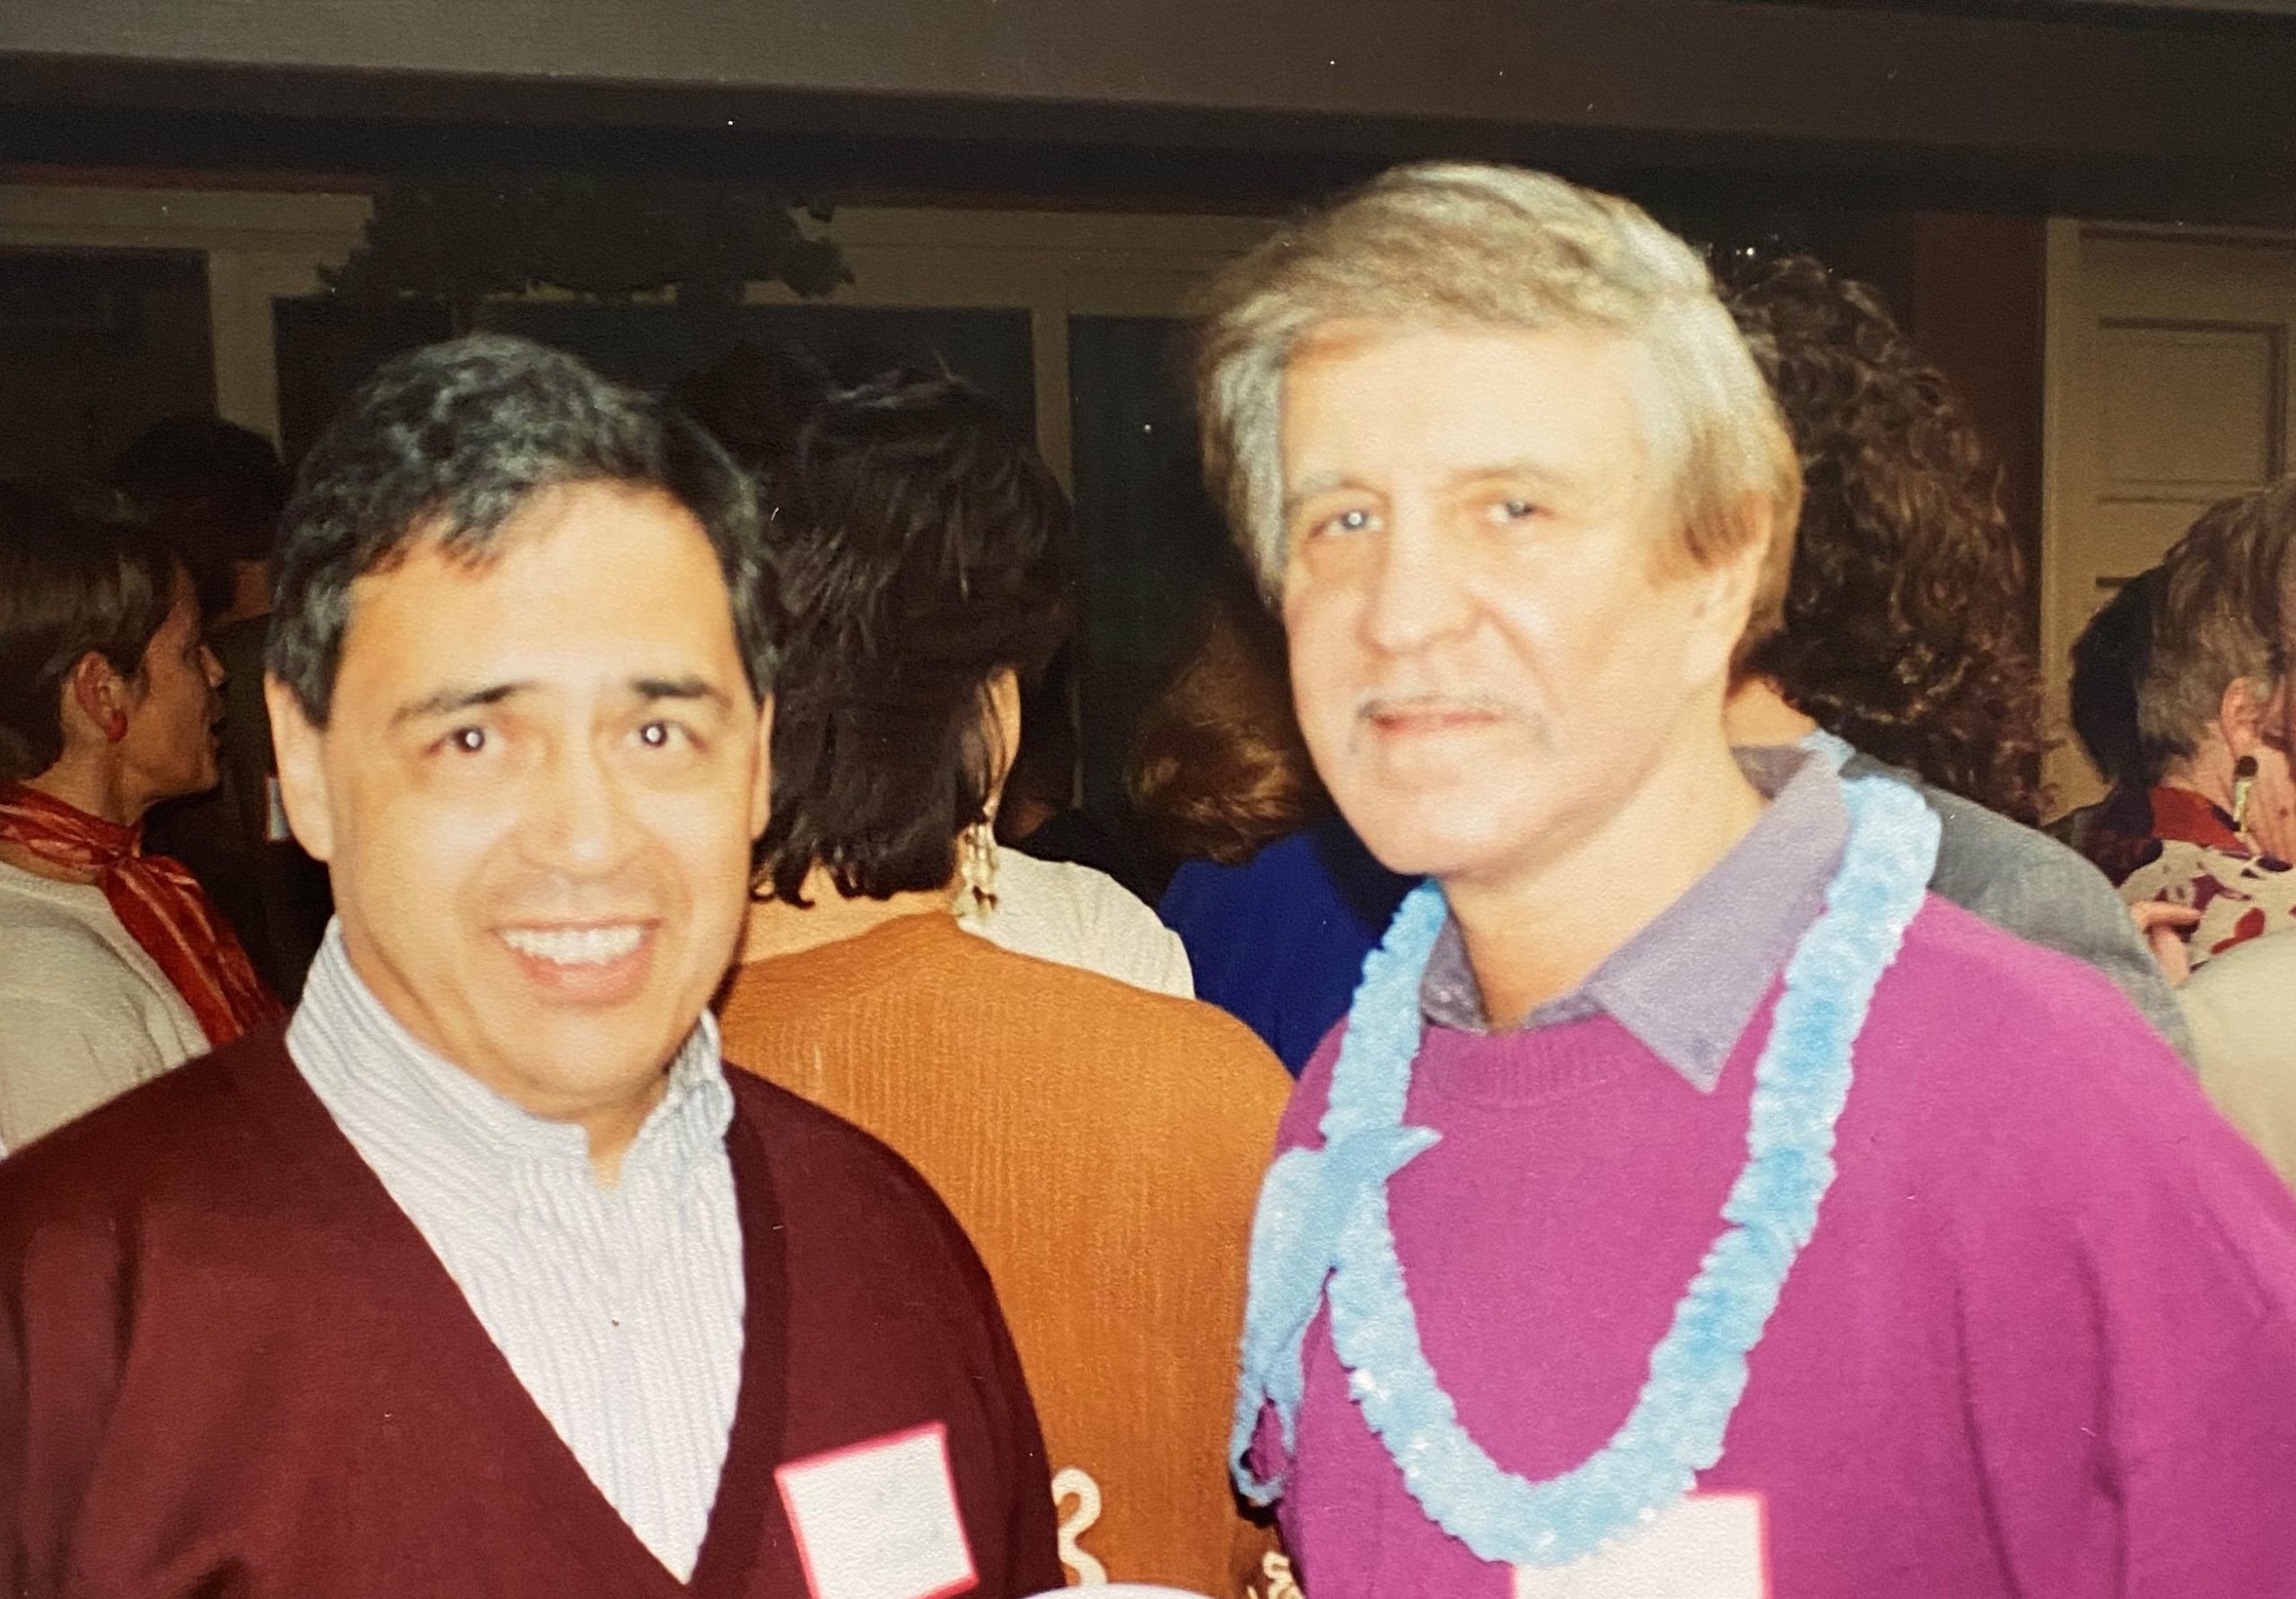 Ben with fellow DBA Past President Don Cordova.